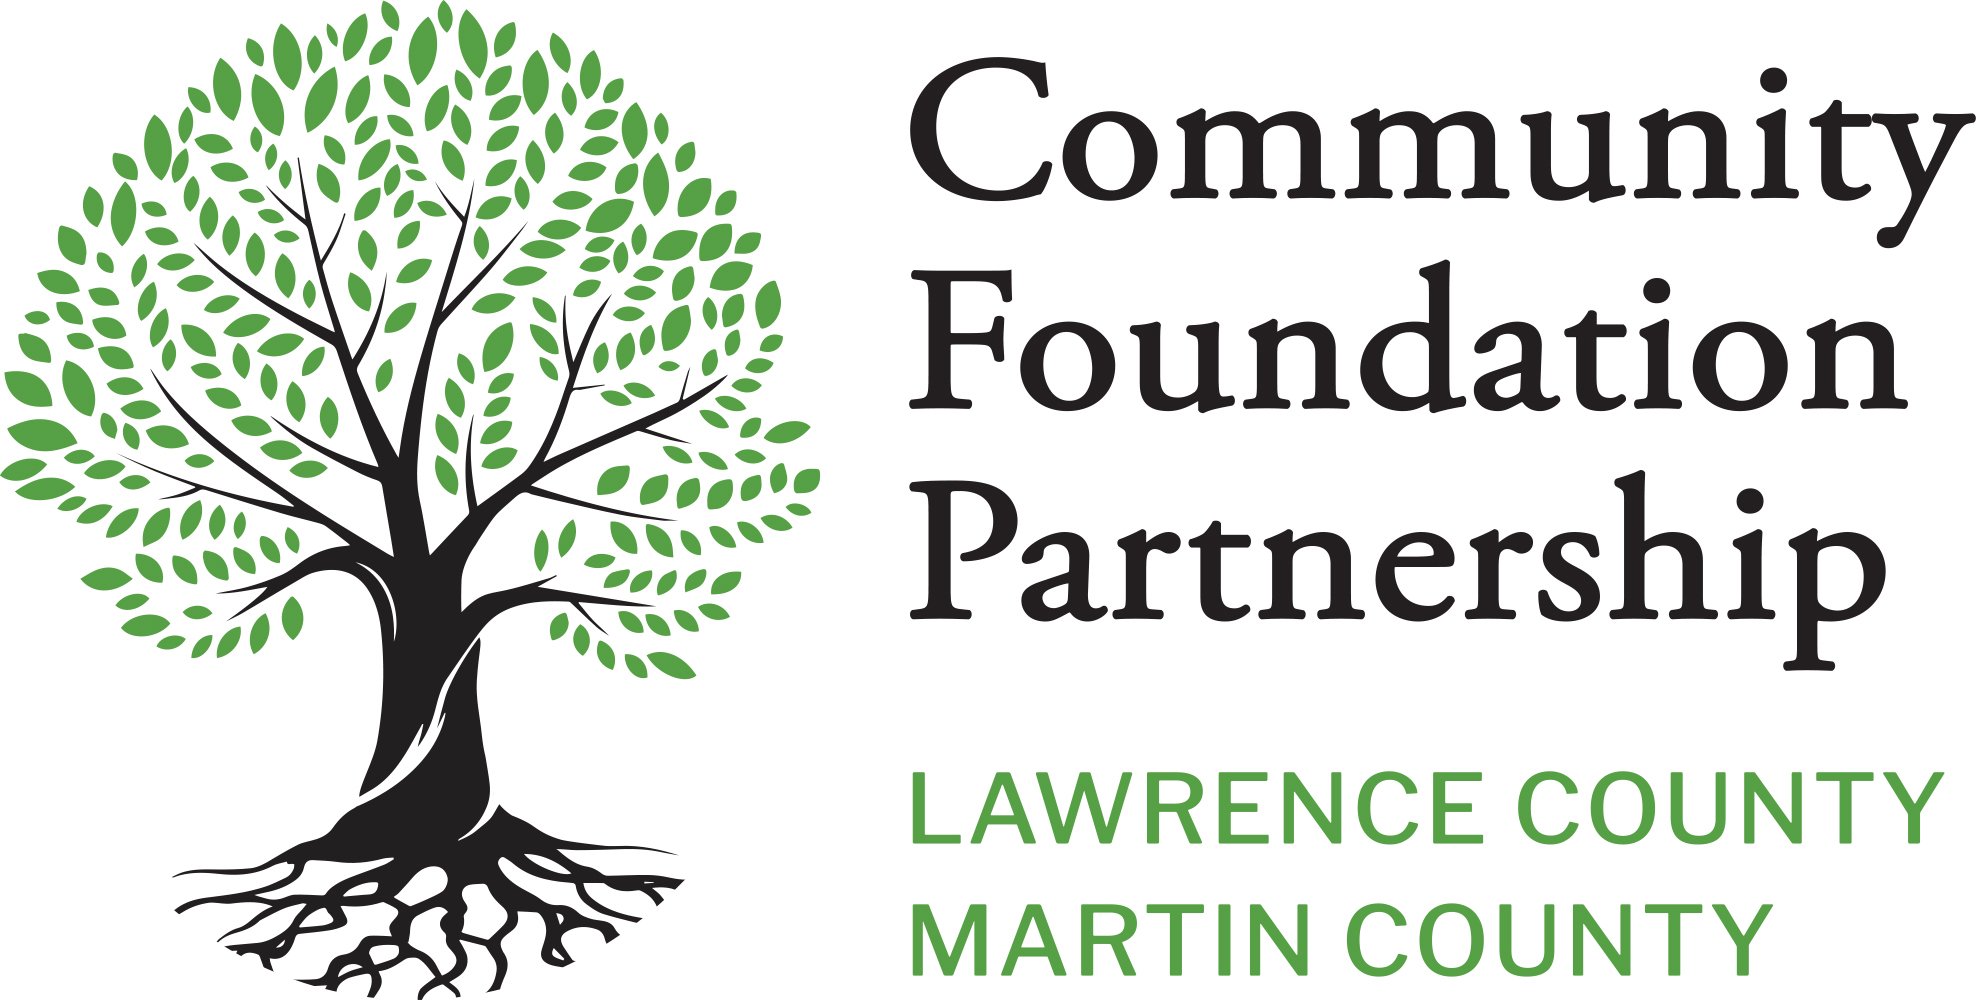 Community Foundation Partnership